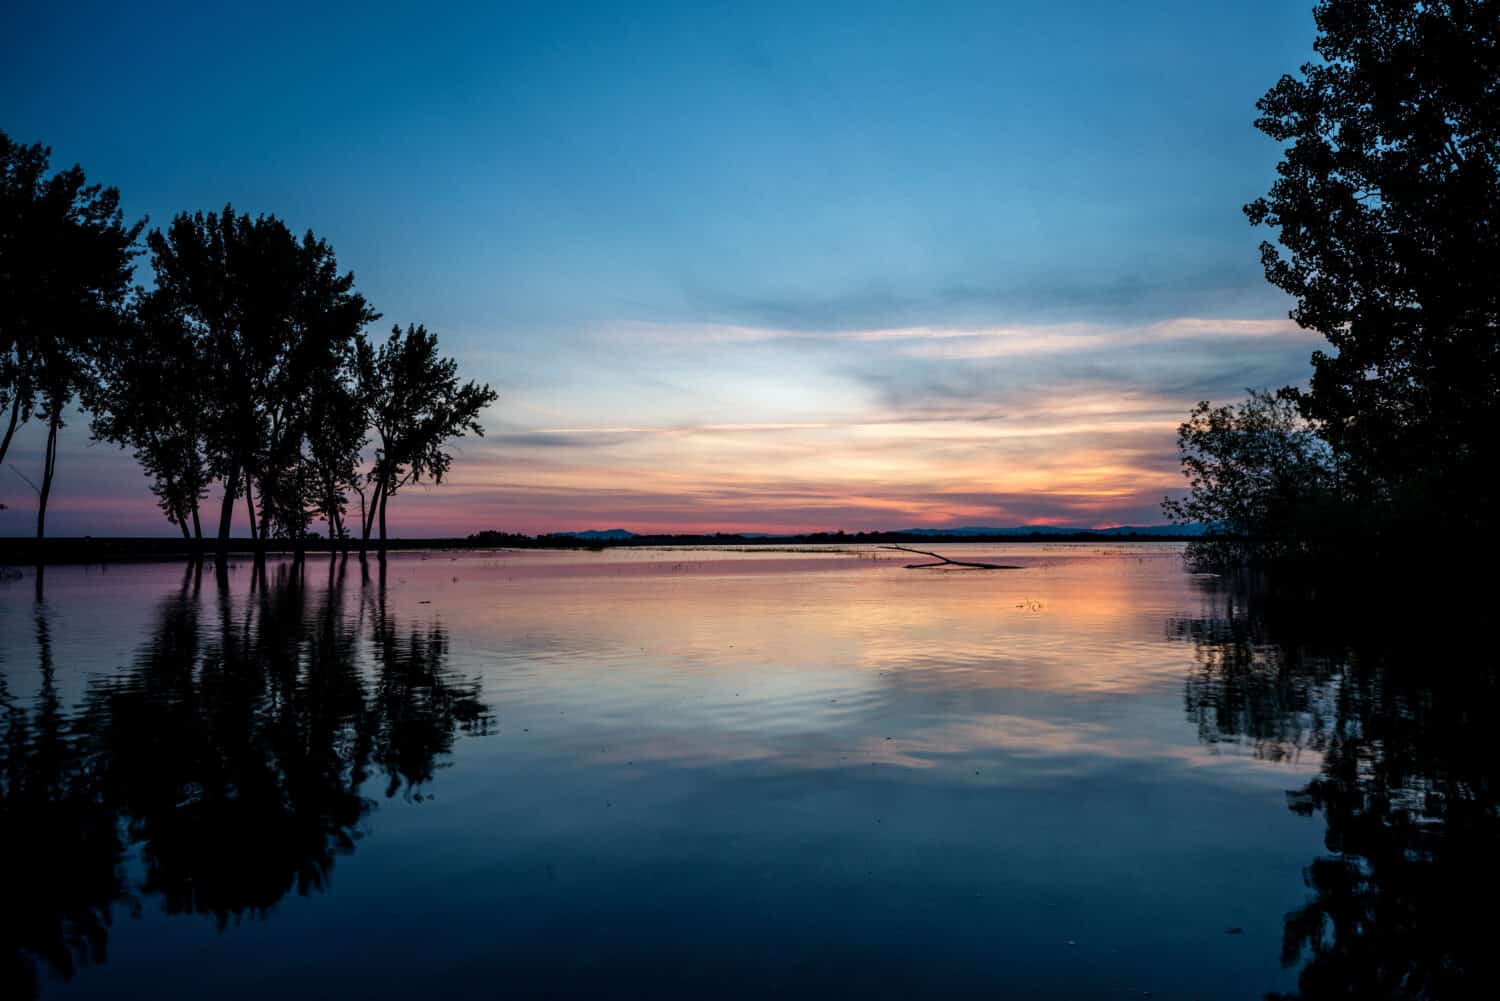 Lake Lowell Idaho sunrise reflection and trees